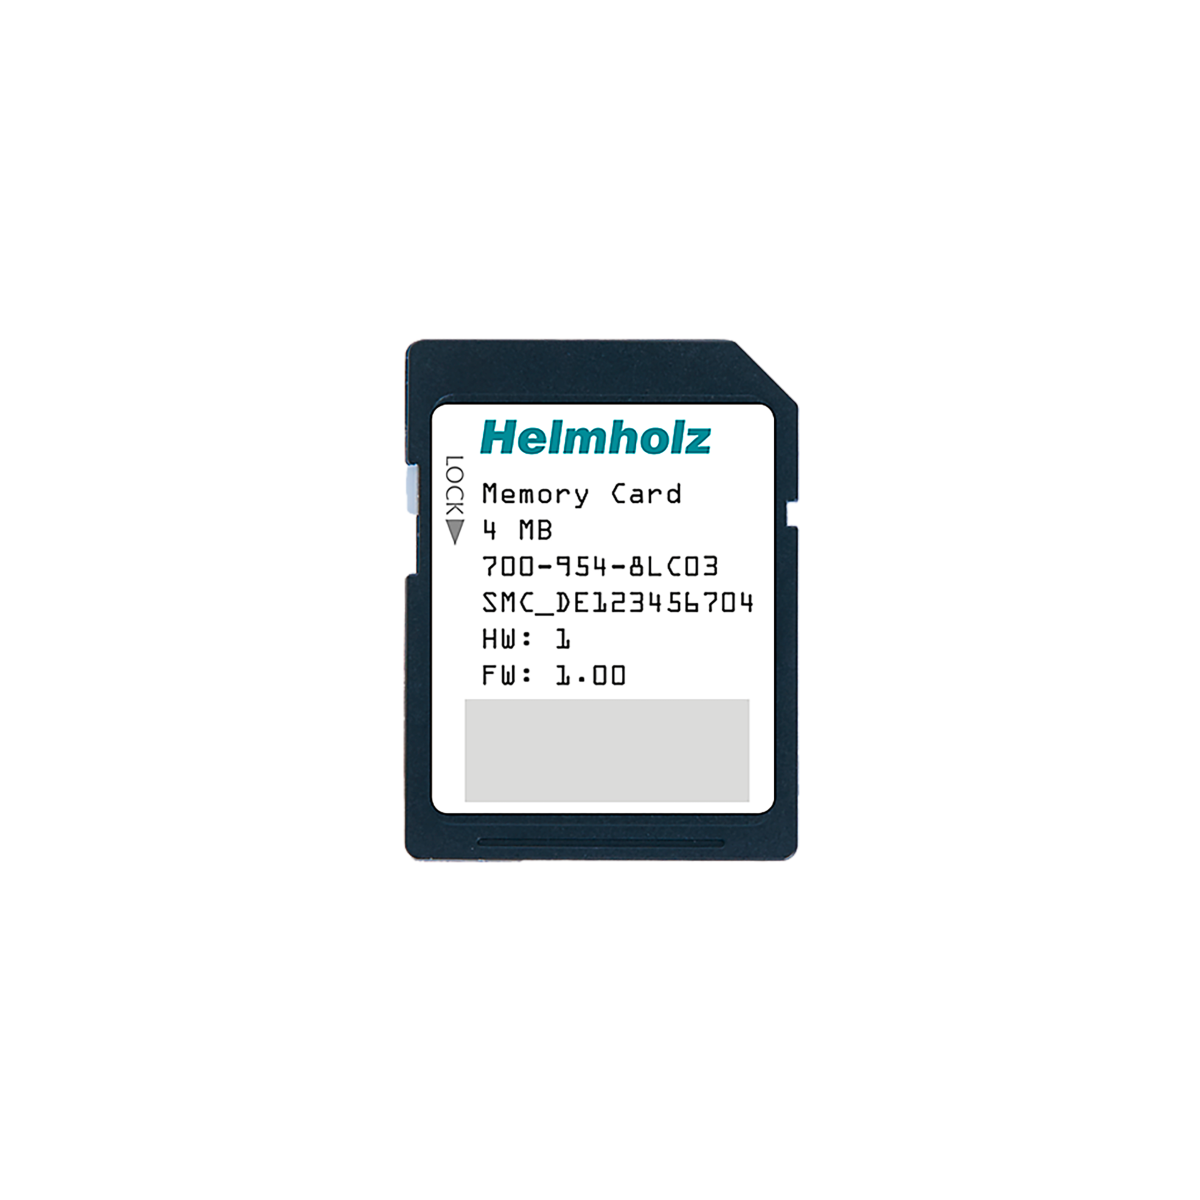 700-954-8LC03 Helmholz | Memory card S7 Helmholz | Telestar Shop Online